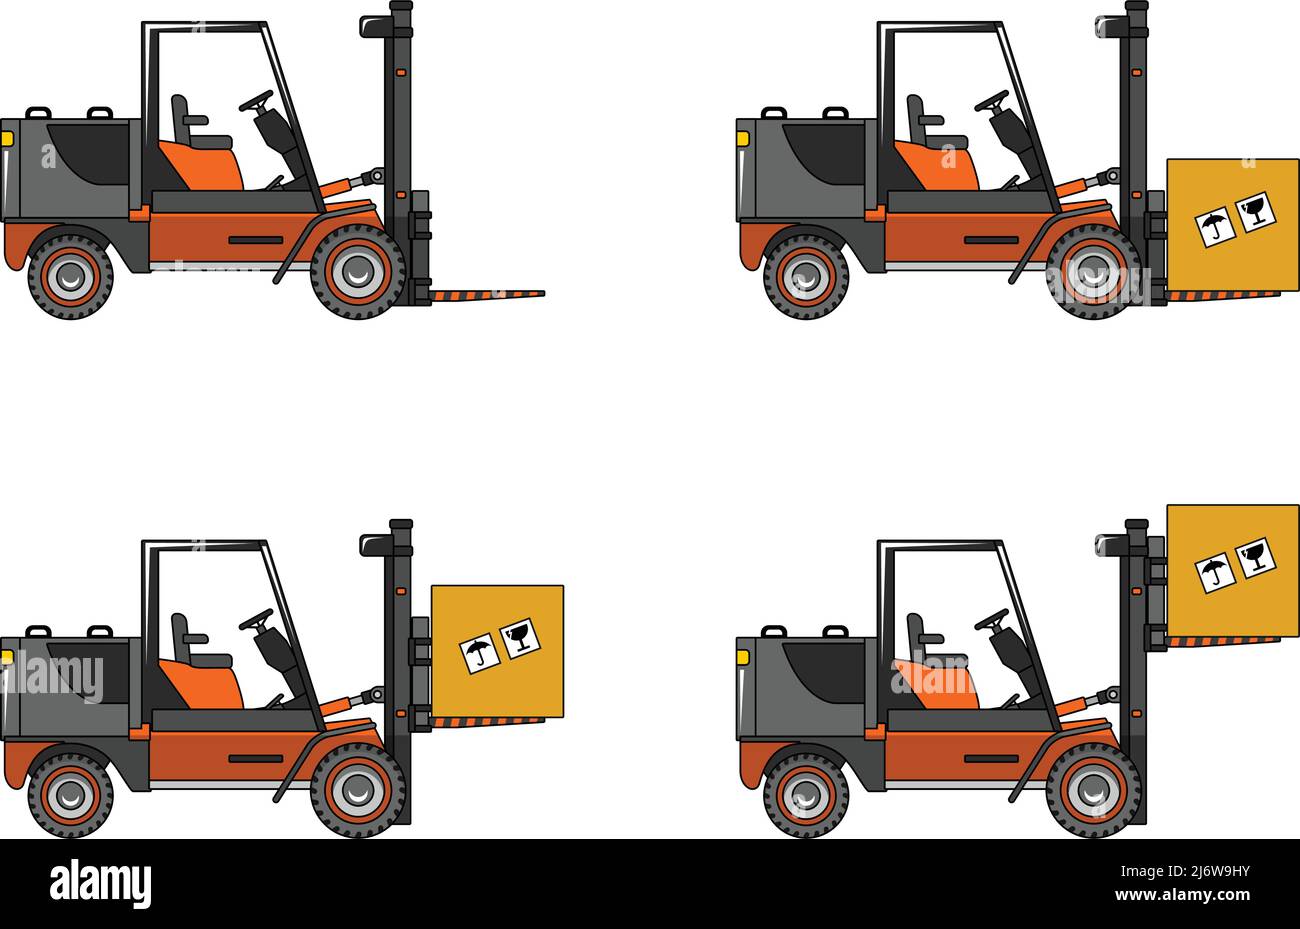 Detaillierte Darstellung von Gabelstaplern, schweren Geräten und Maschinen Stock Vektor